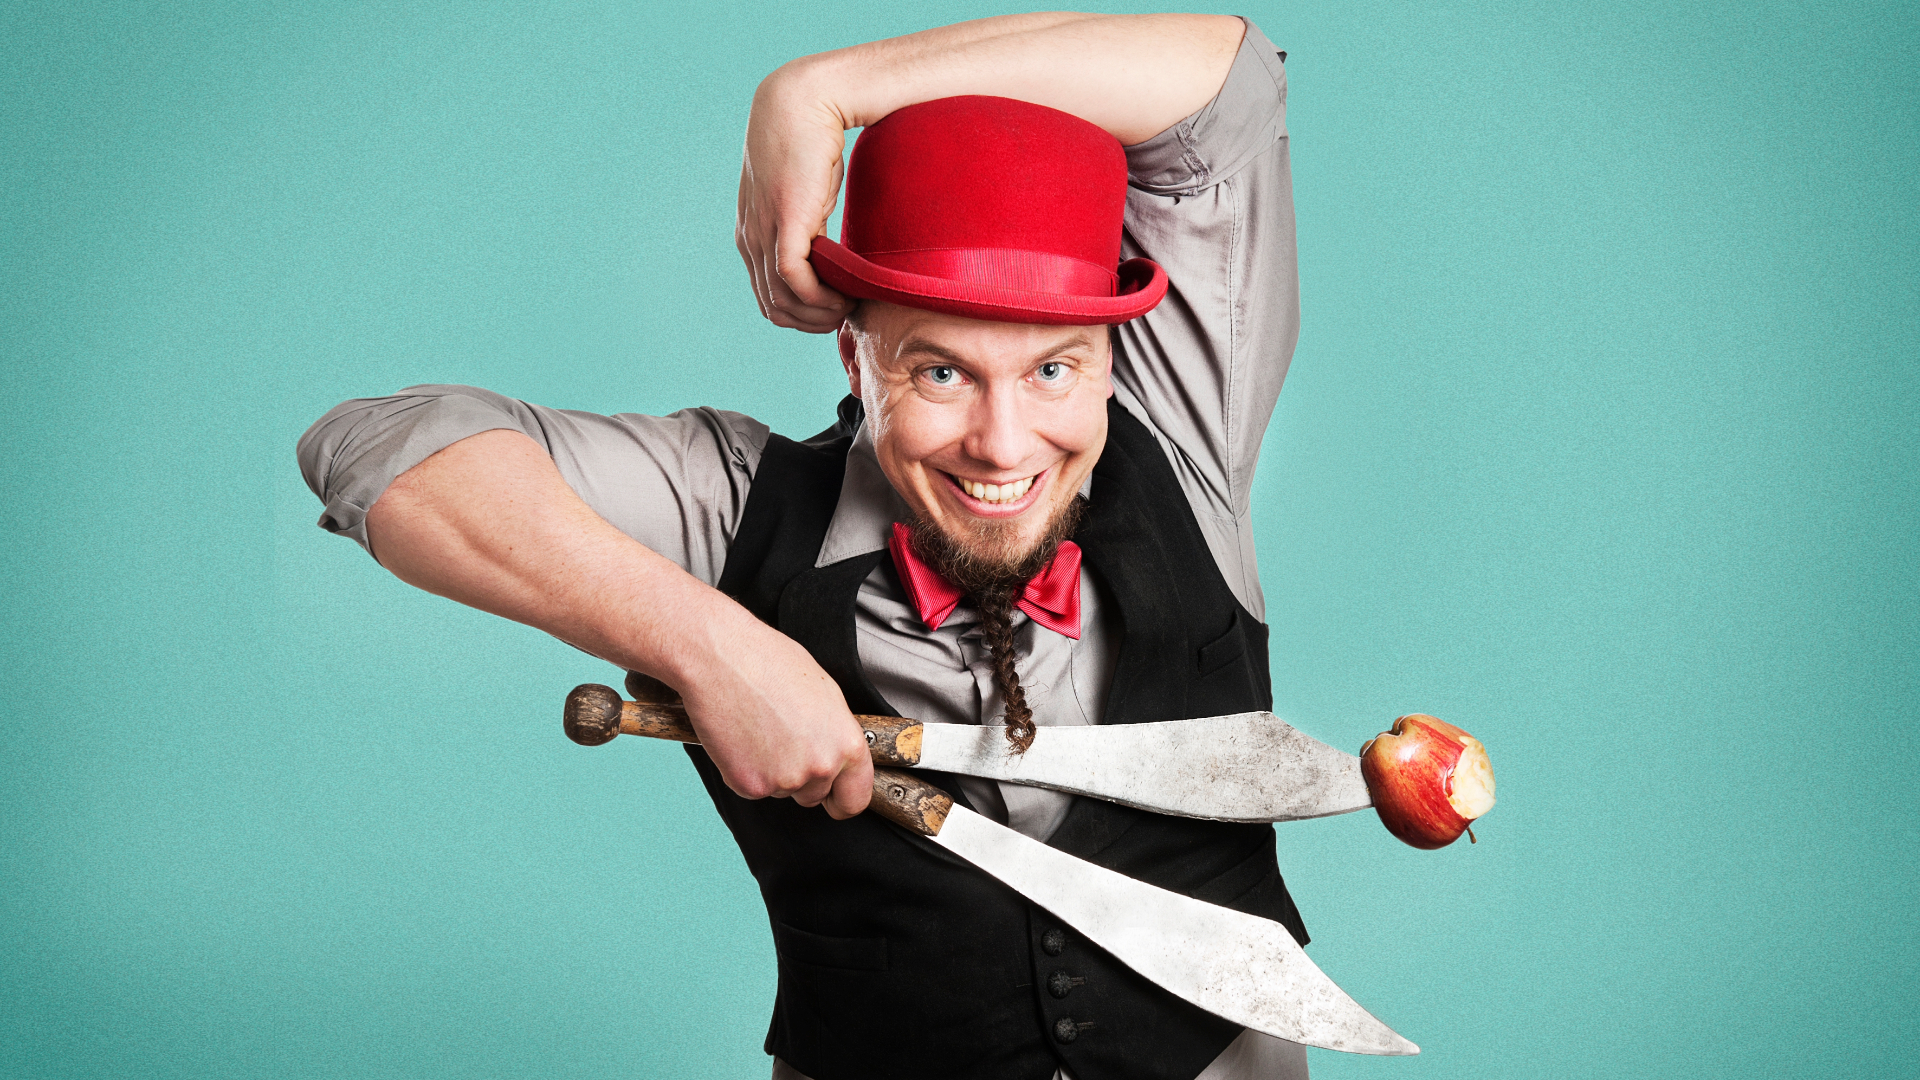 En gycklare spexar inför bild med äpple och knivar och en röd hatt.